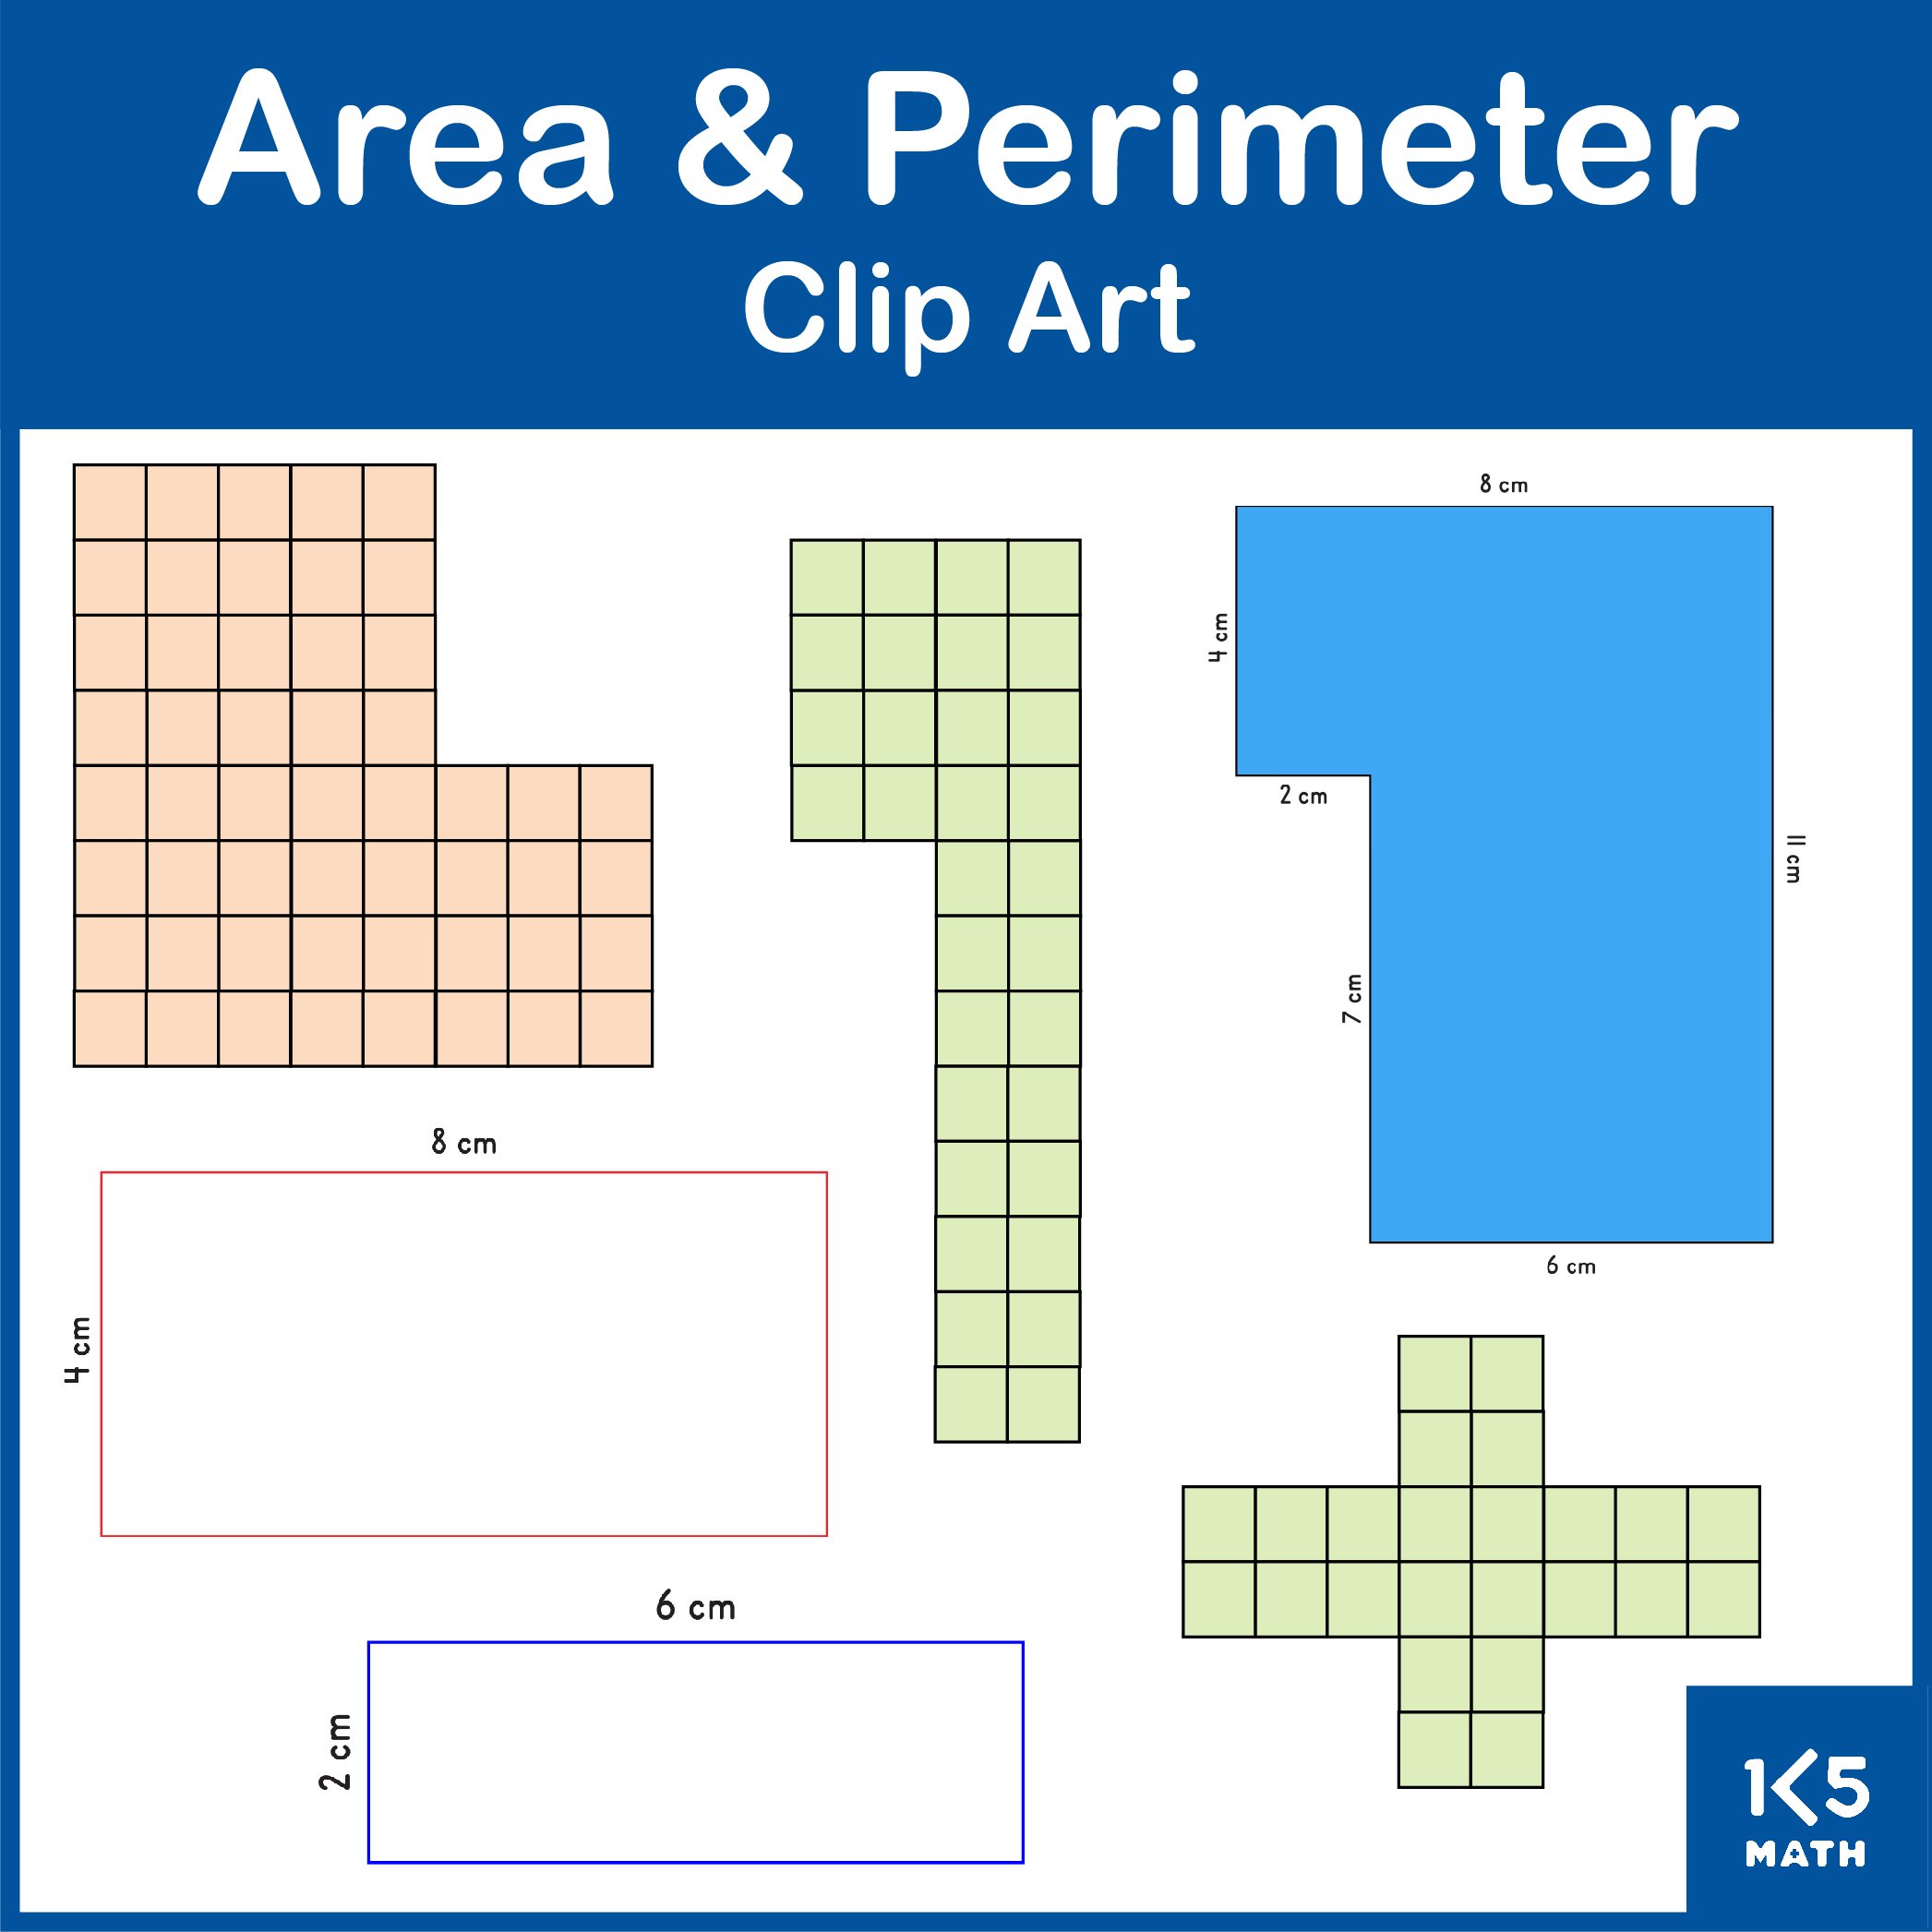 Area and Perimeter Clip Art